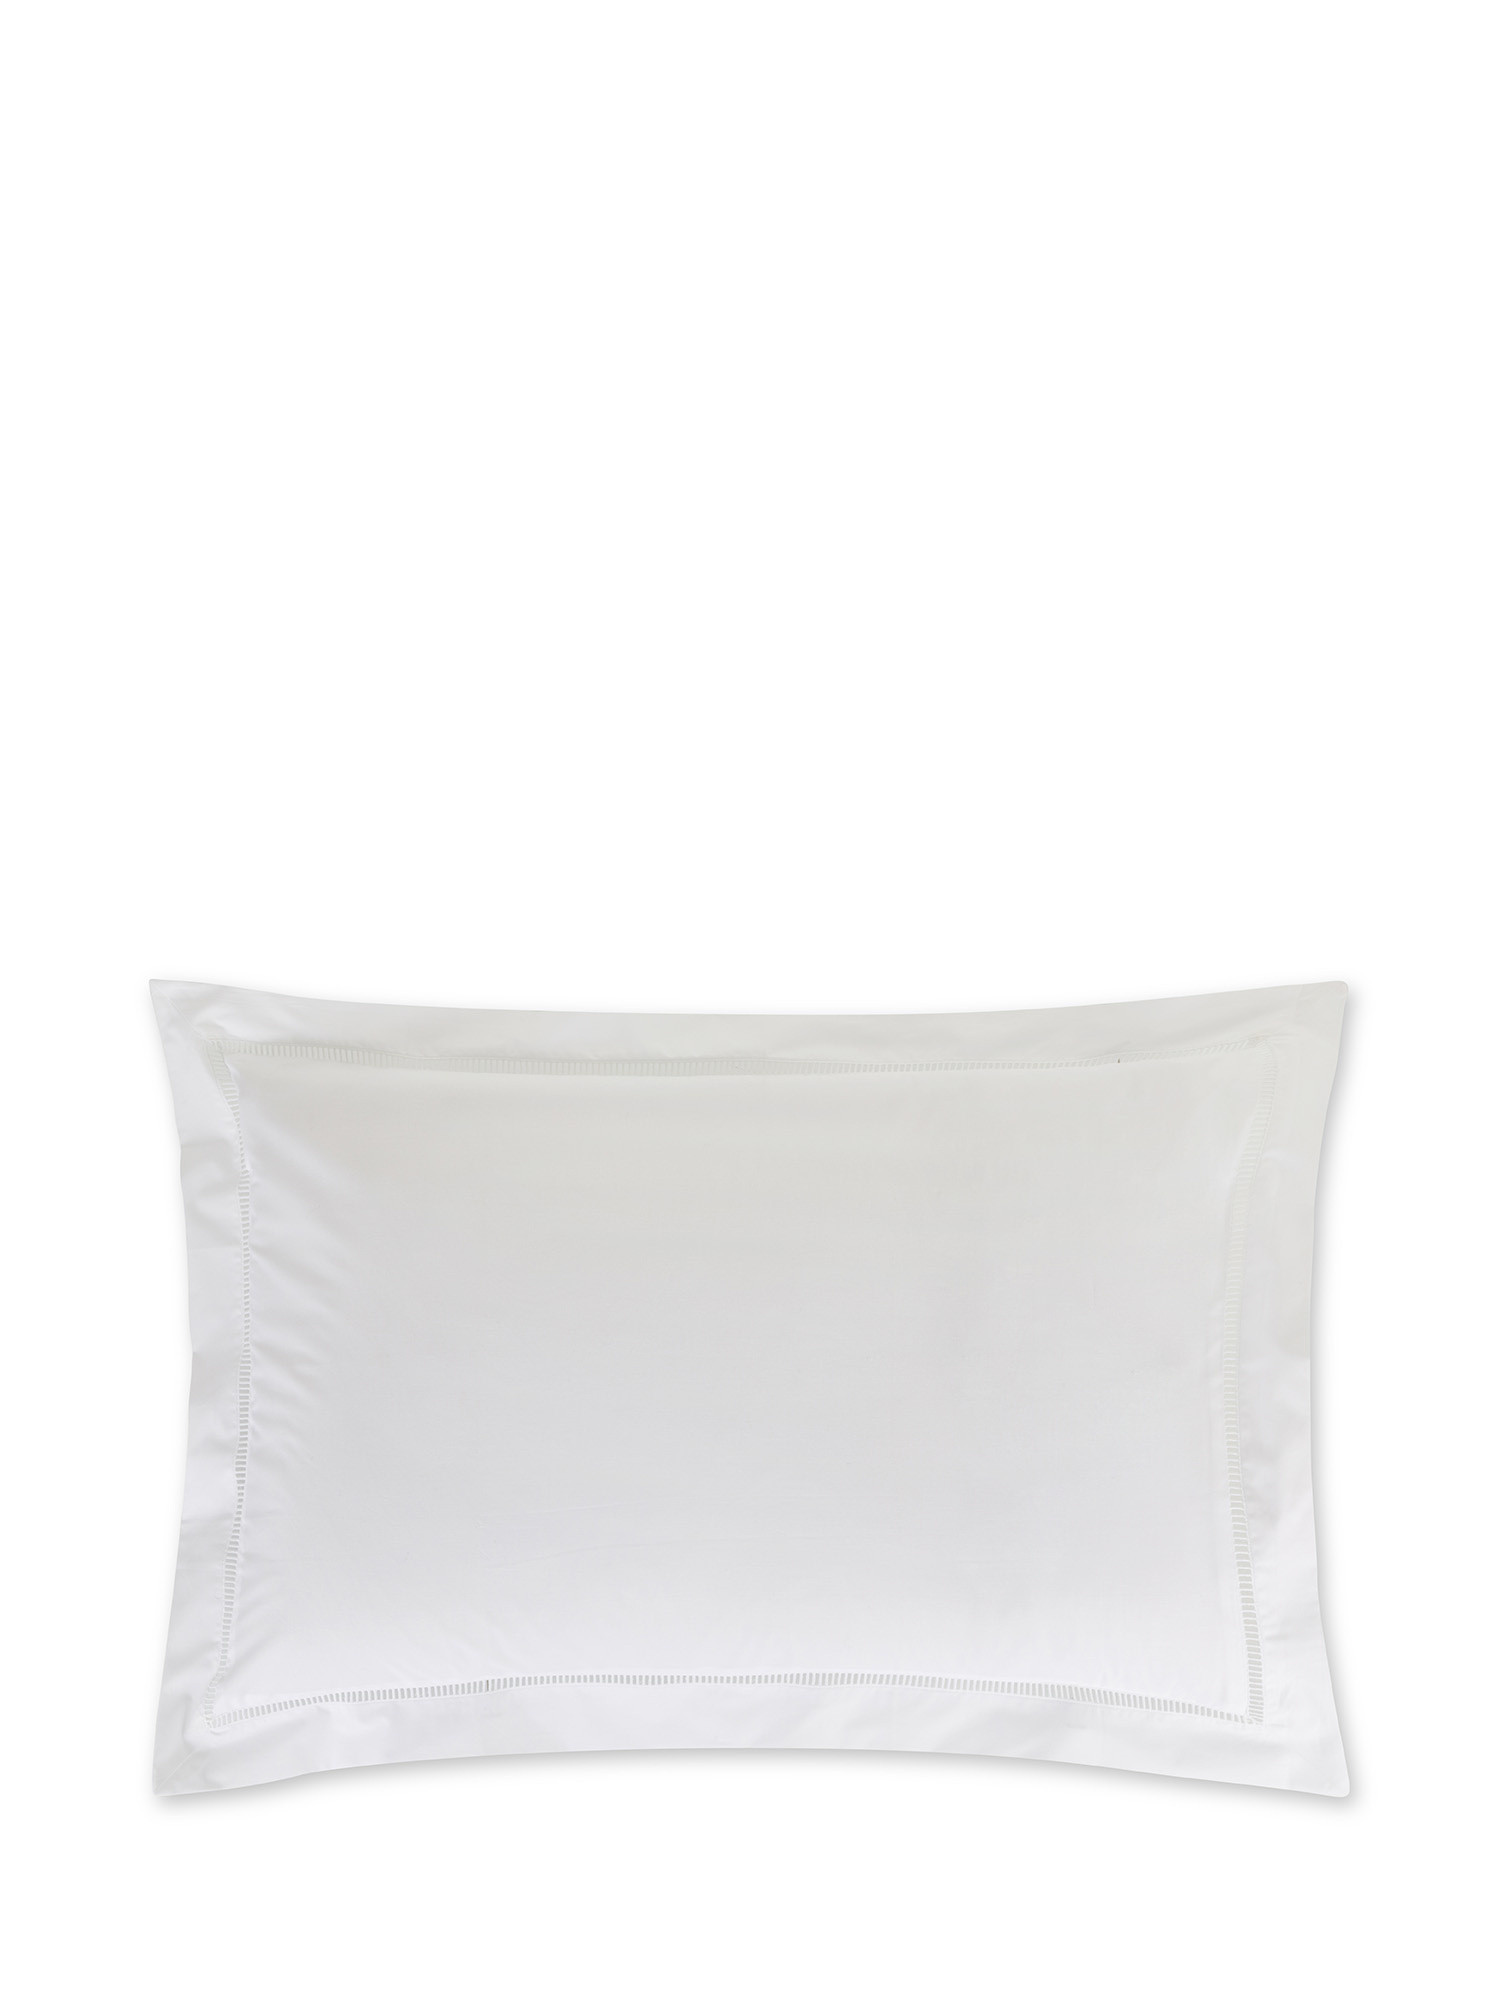 Pillowcase in fine cotton percale Portofino, White, large image number 0